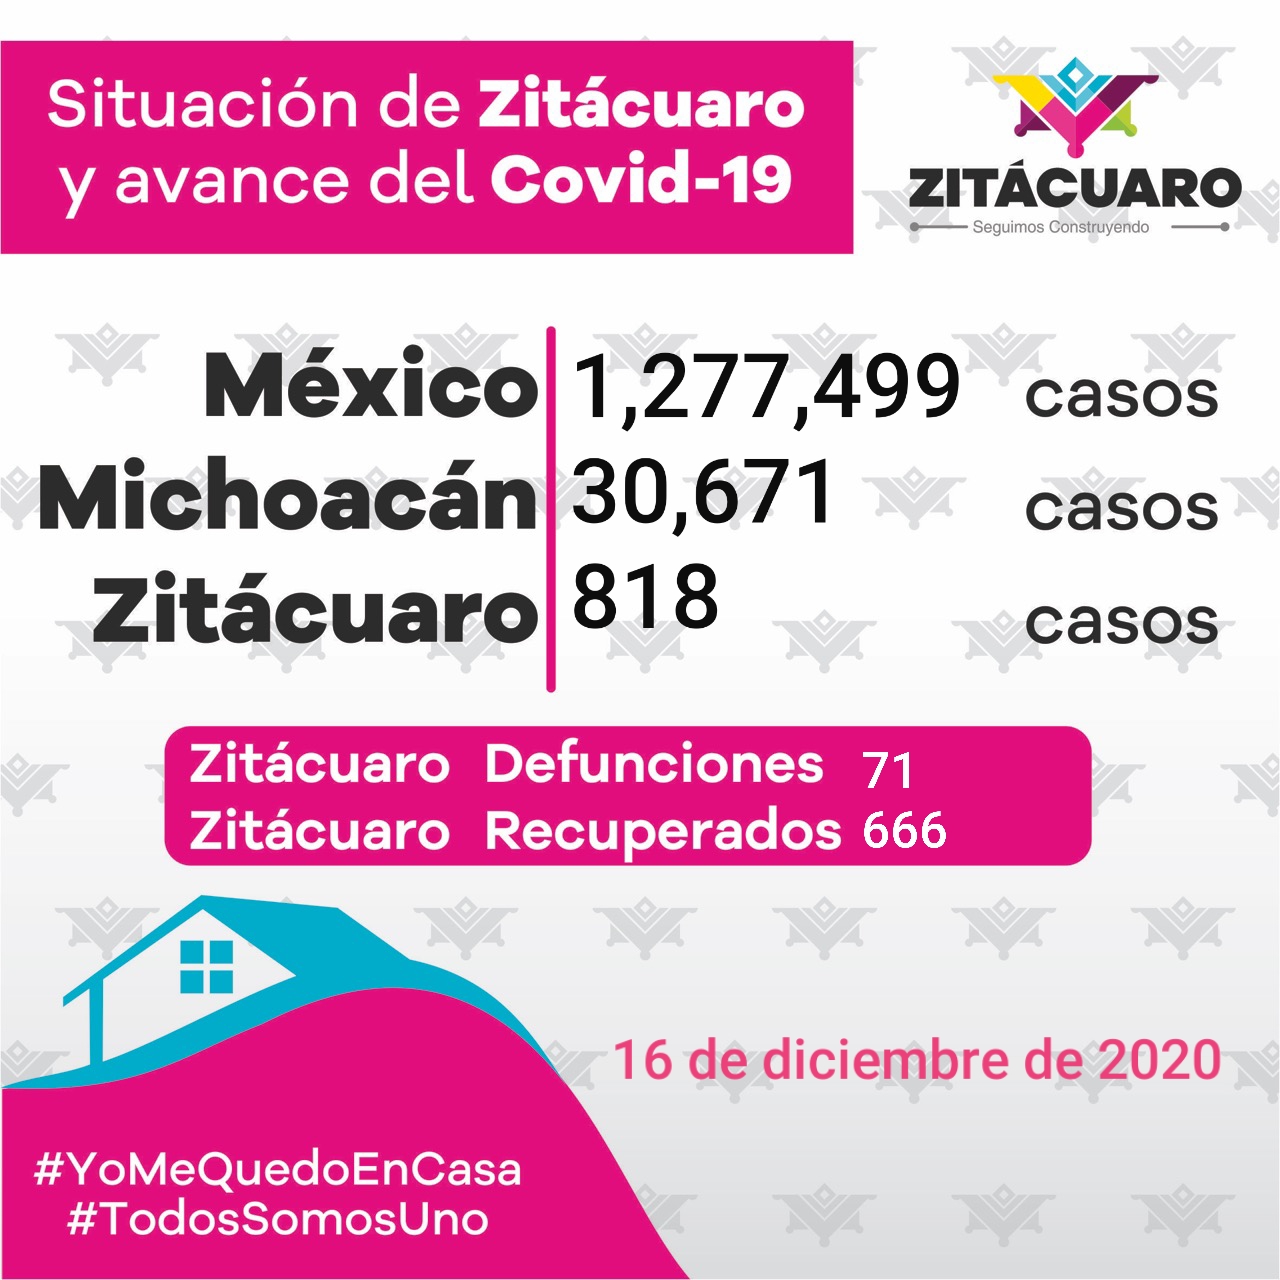 818 casos de COVID – 19 en Zitácuaro